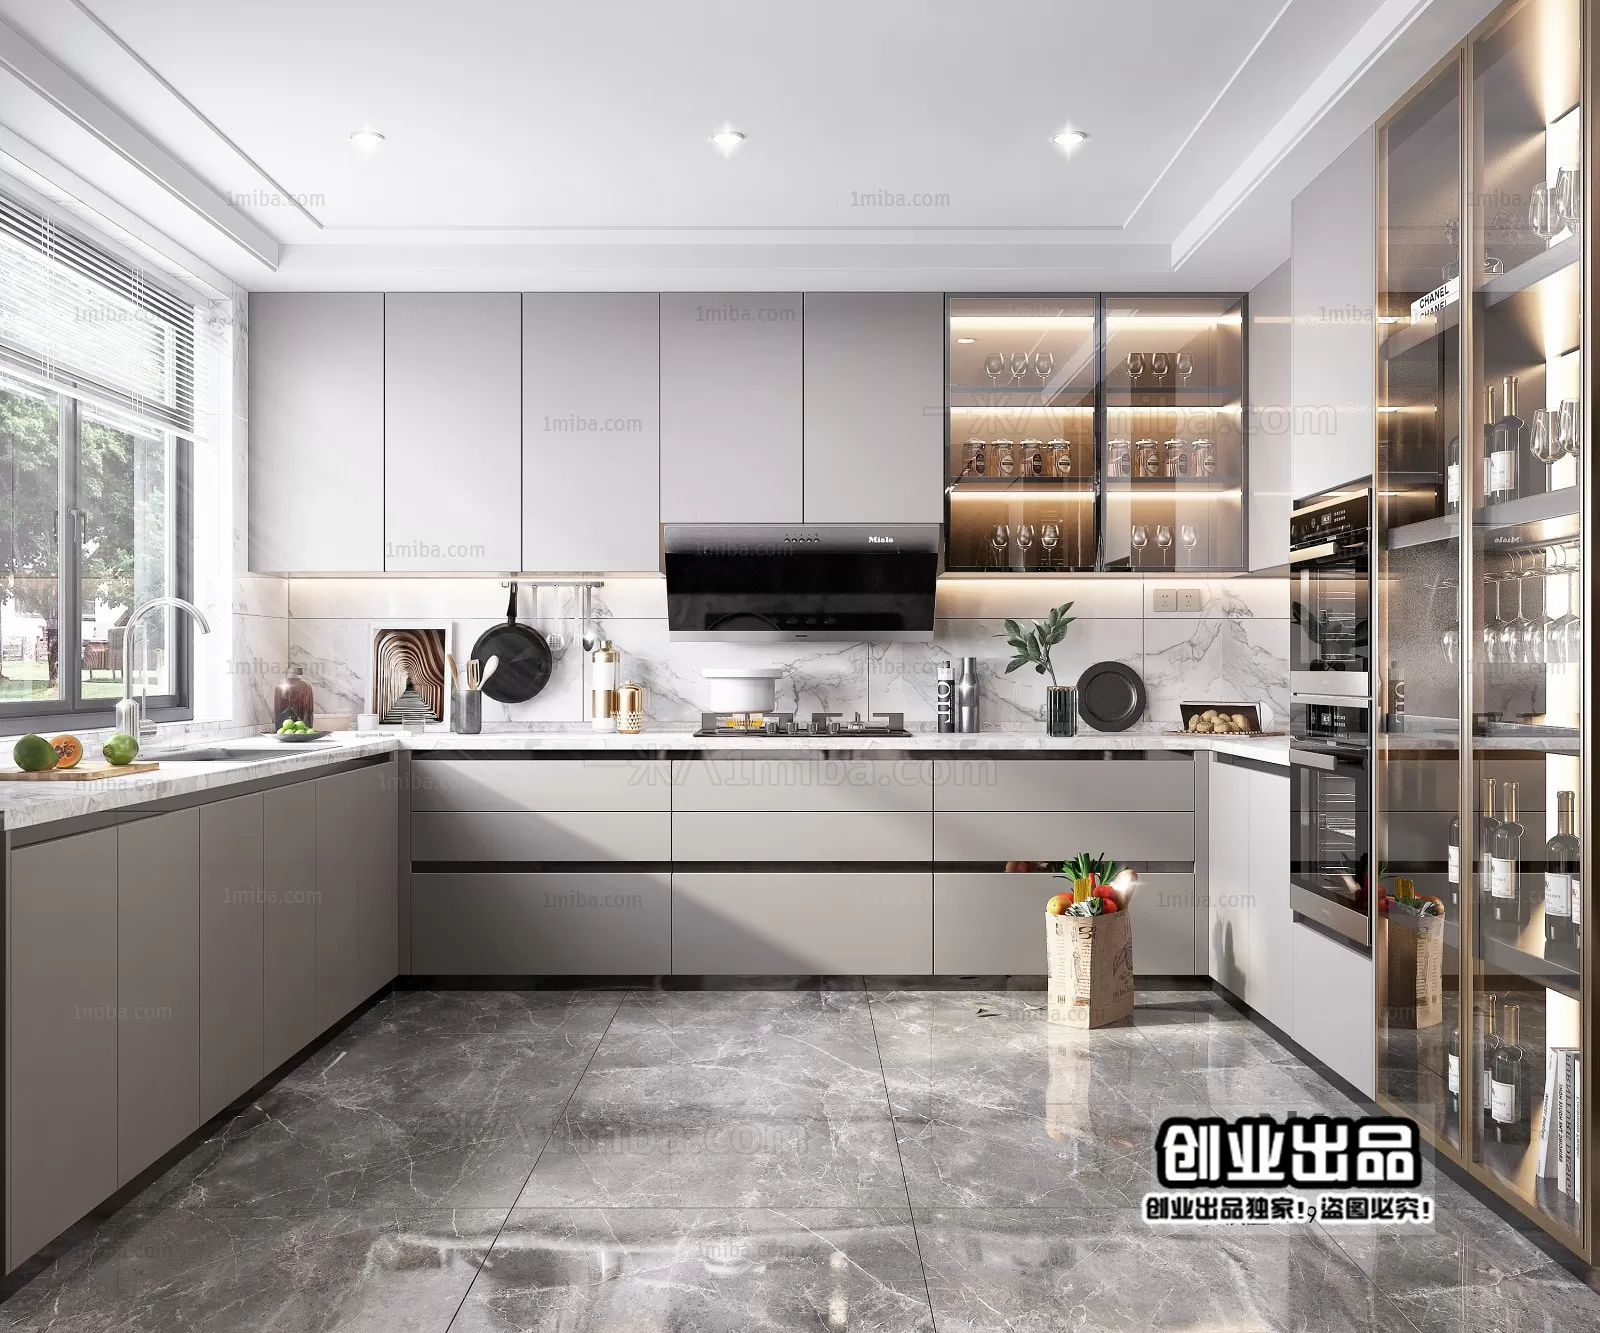 Kitchen – Modern Interior Design – 3D Models – 053